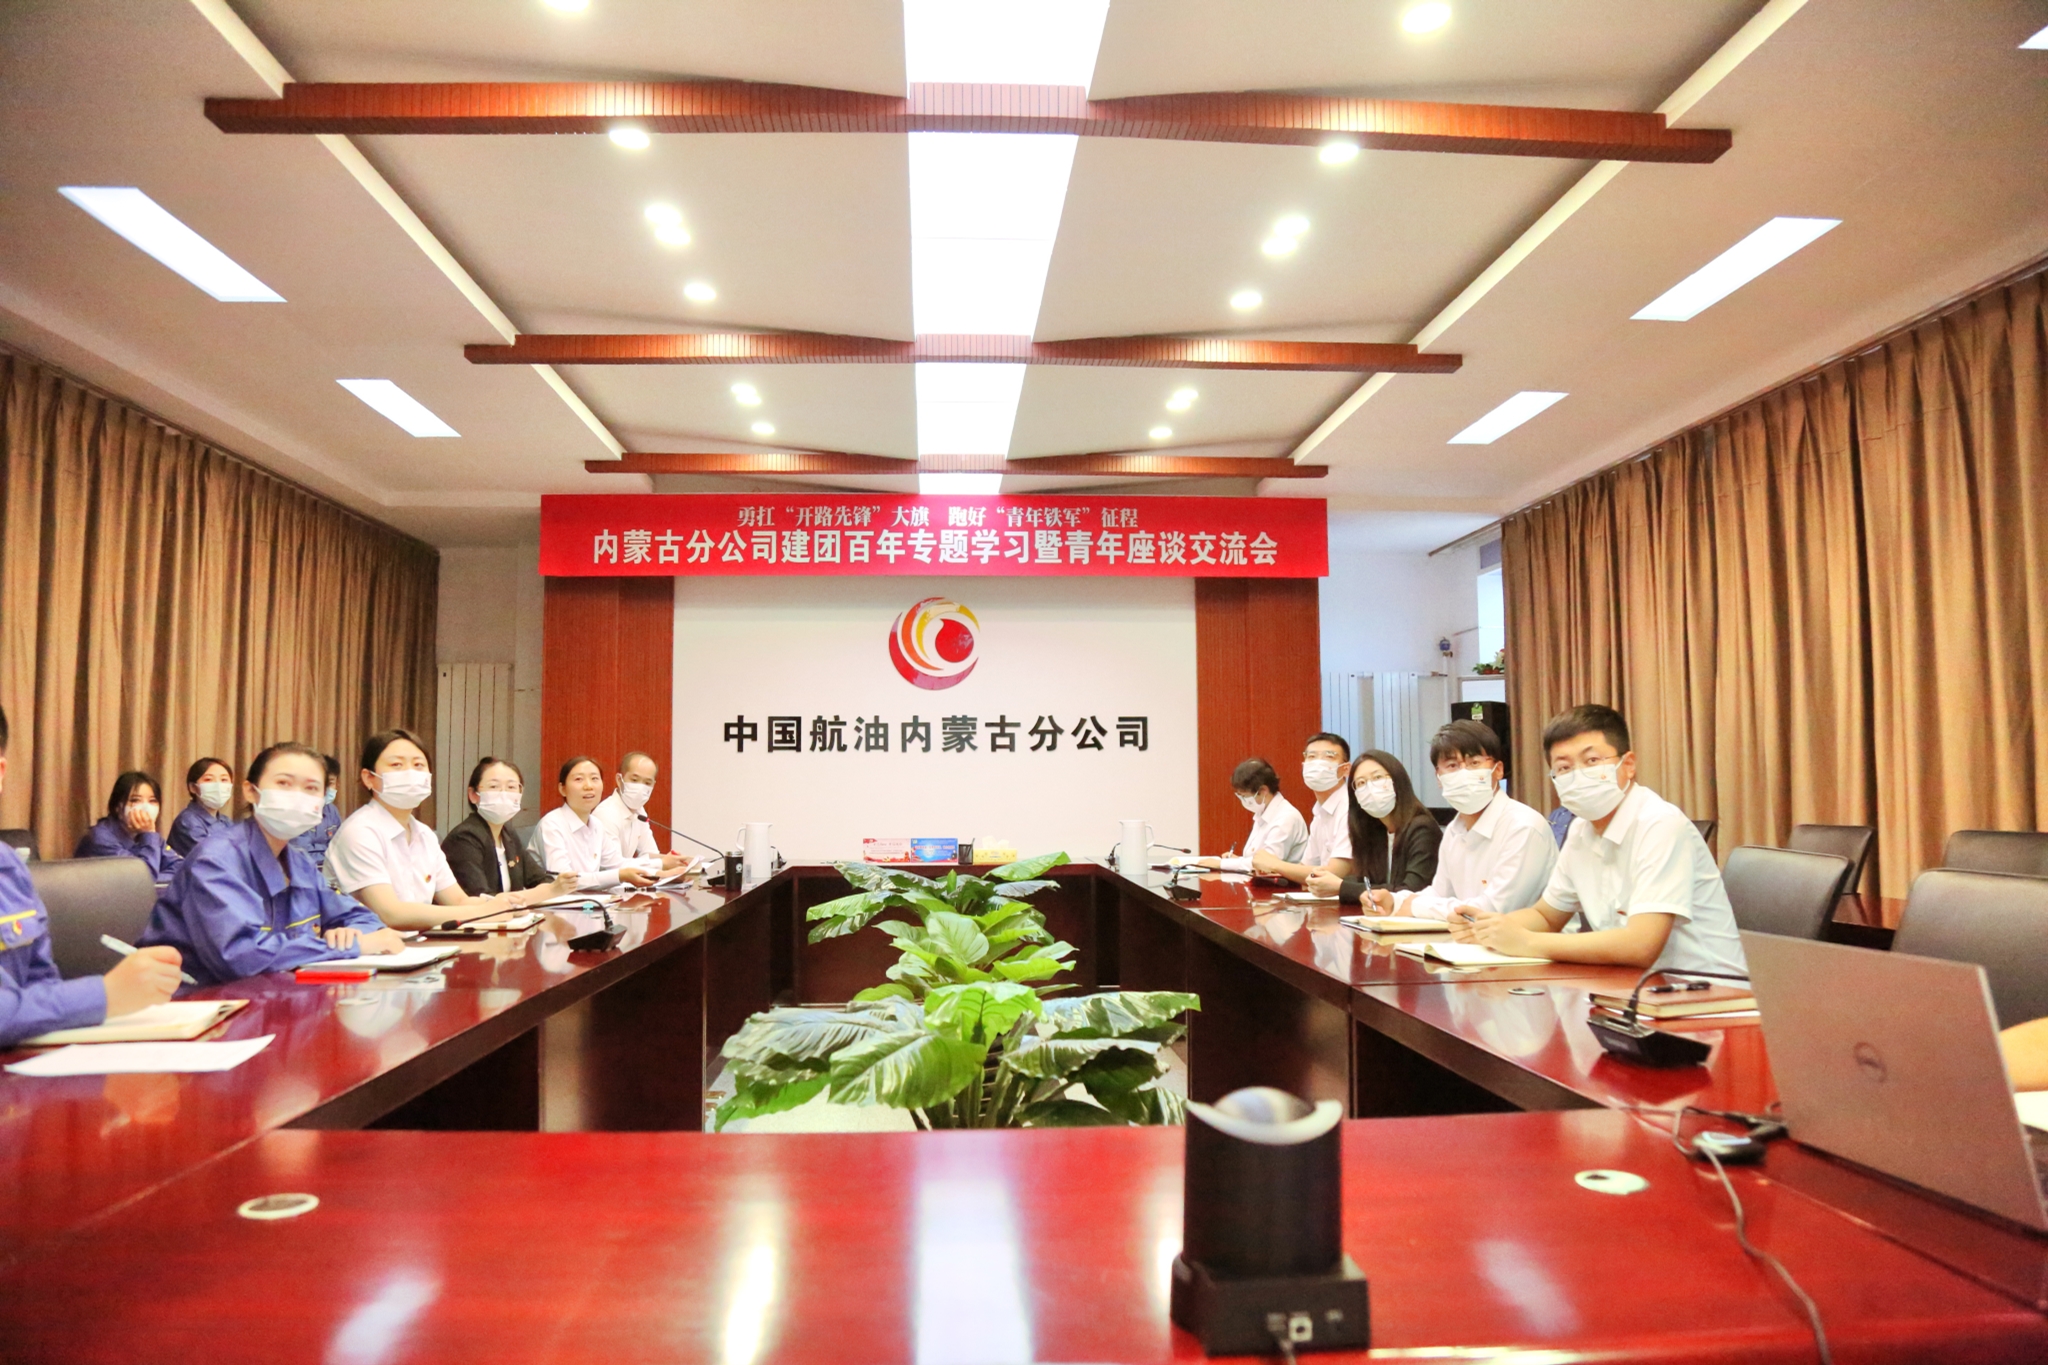 中国航油内蒙古组织召开青年座谈交流会 推进青年精神素养提升工程